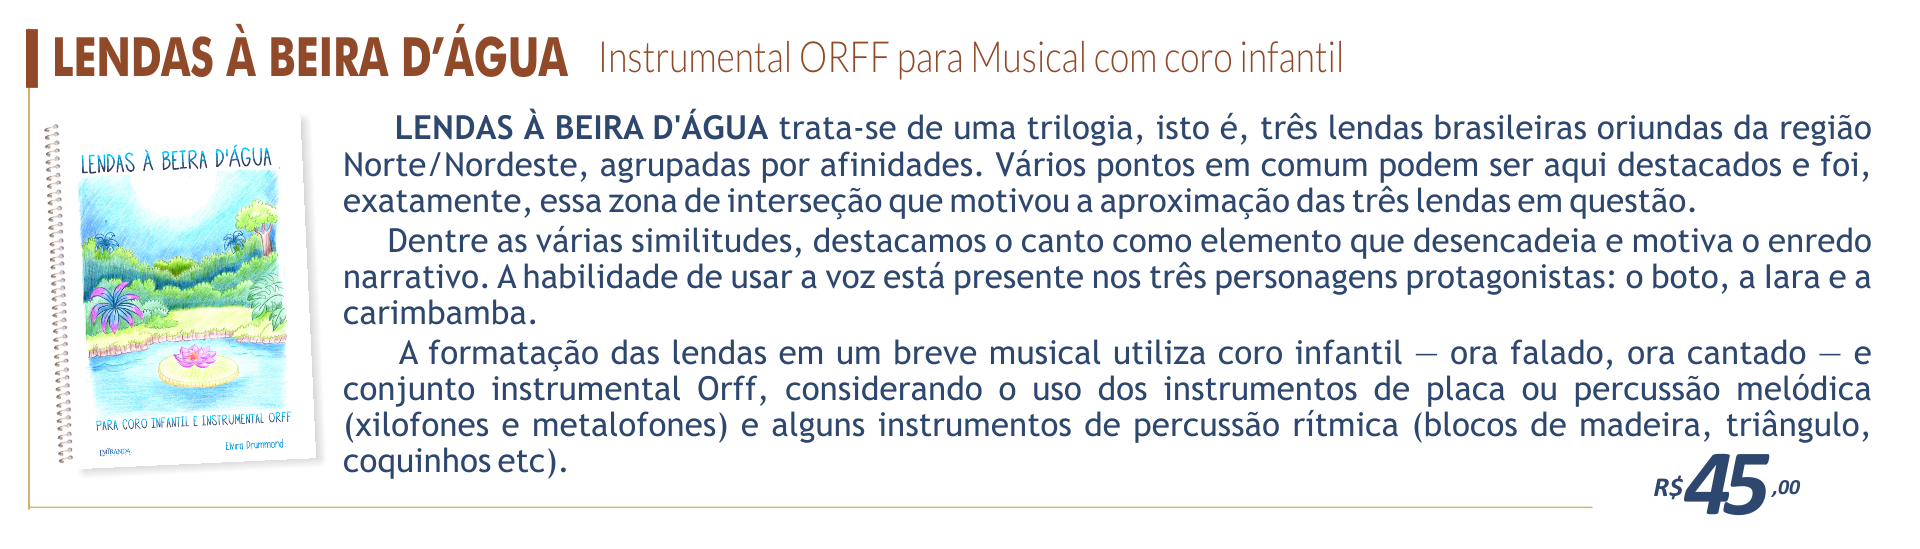 Lendas à beira d'água - Instrumental ORFF para Musical com coro infantil